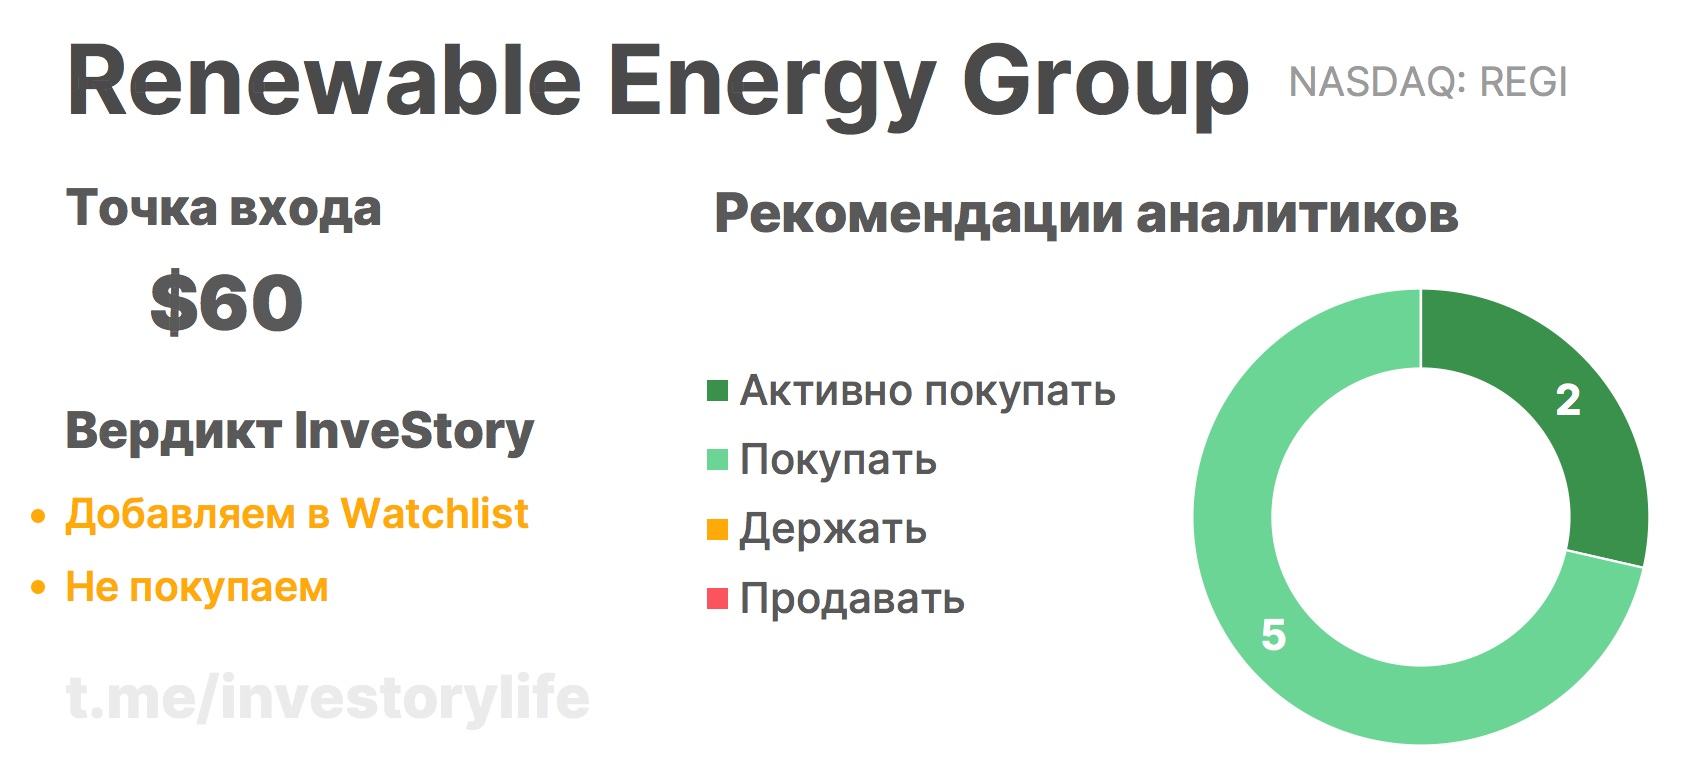 Обзор Renewable Energy Group - Private